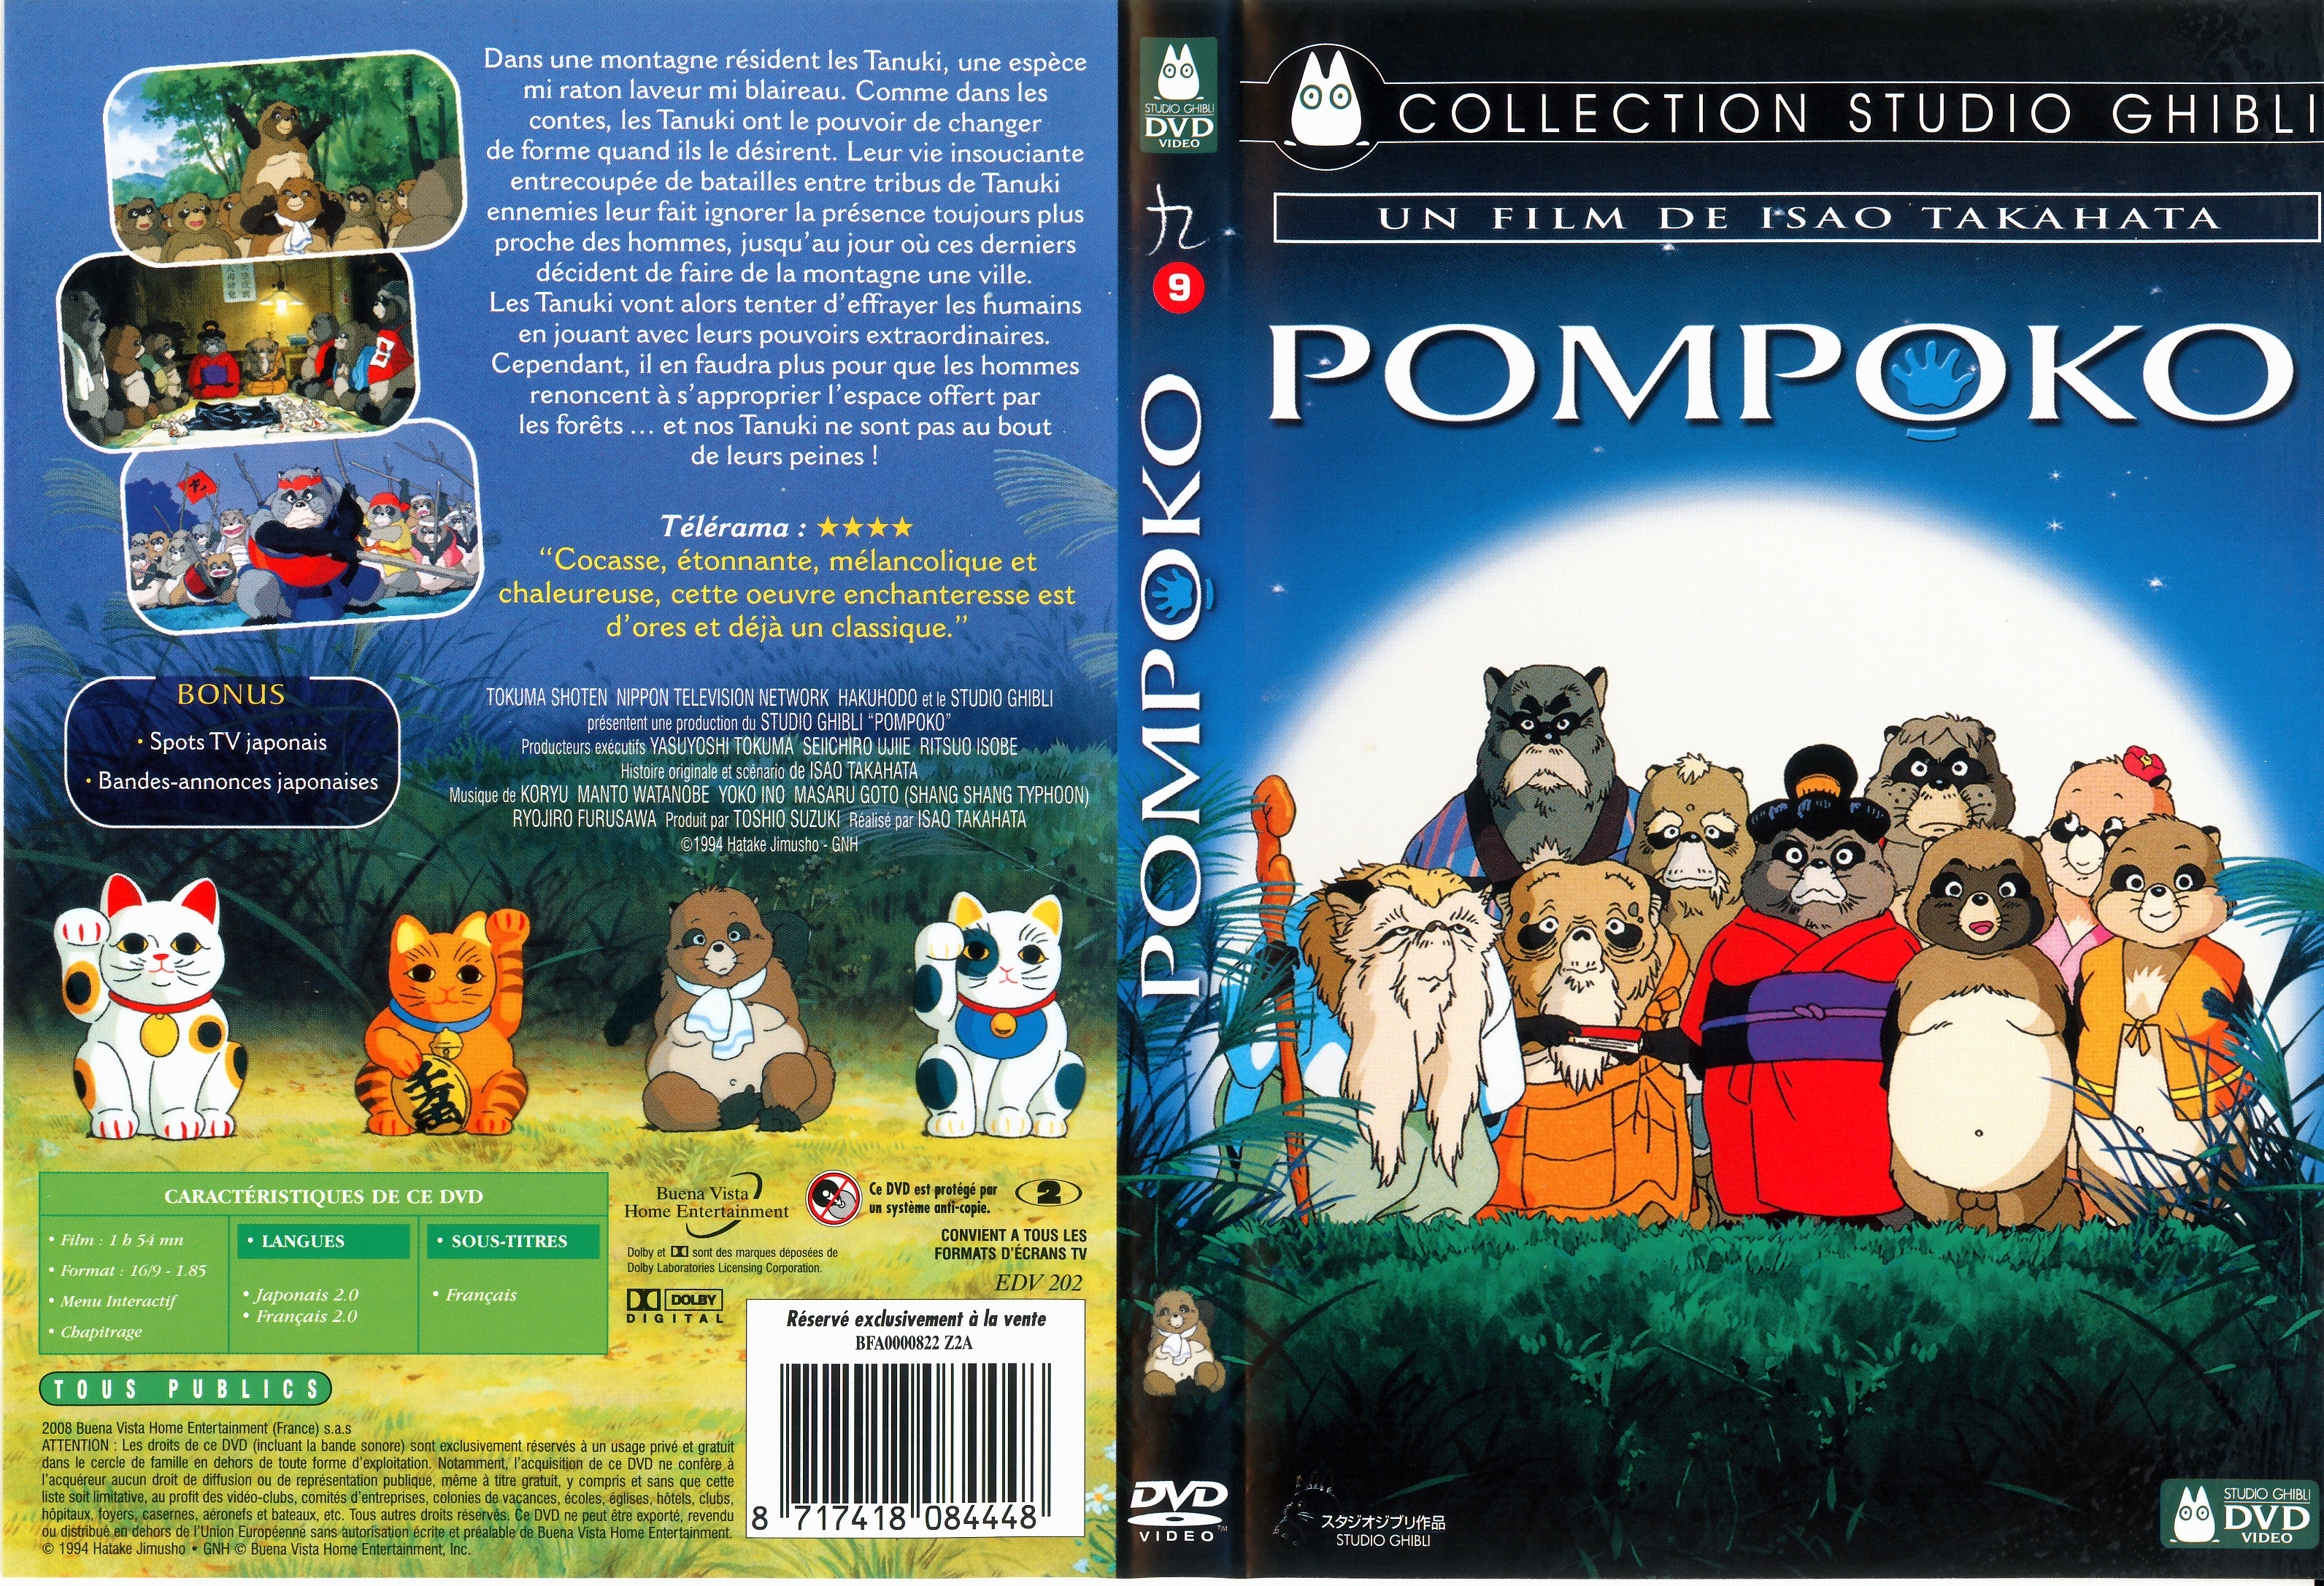 Jaquette DVD Pompoko v3